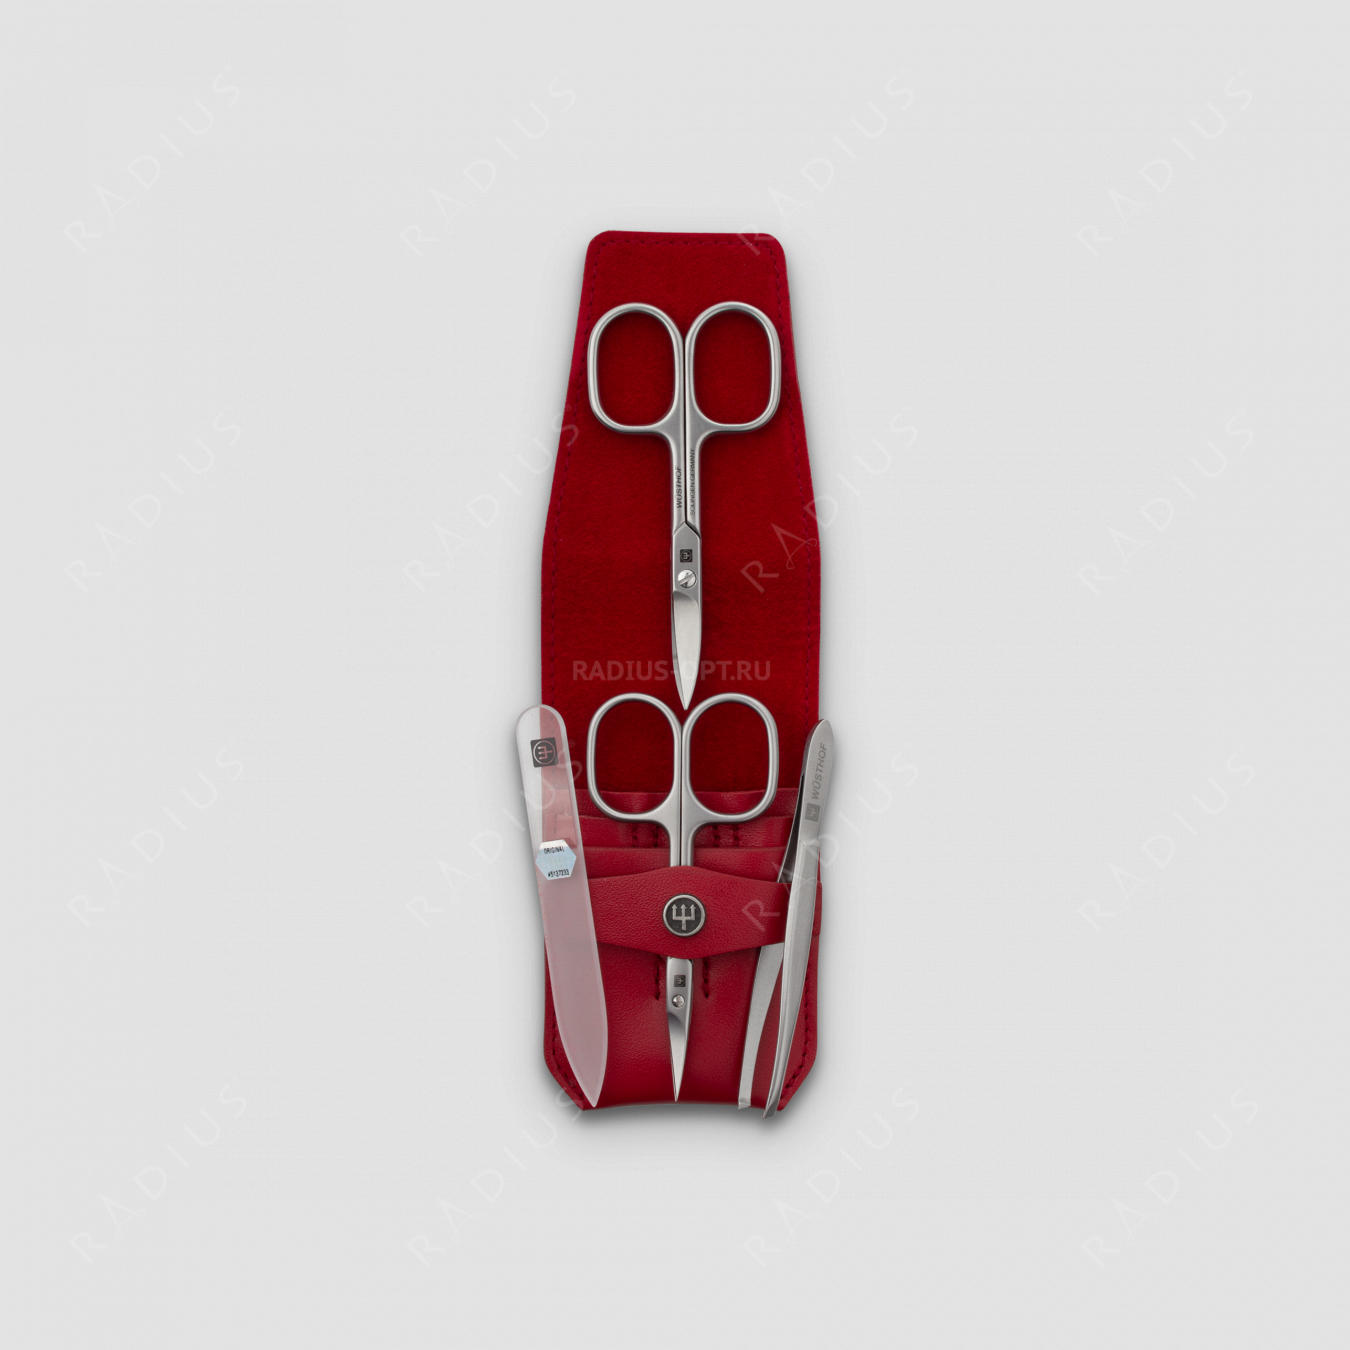 Набор маникюрный 4 предмета в кожаном футляре, цвет красный, сатин, серия Manicure sets, WUESTHOF, Германия